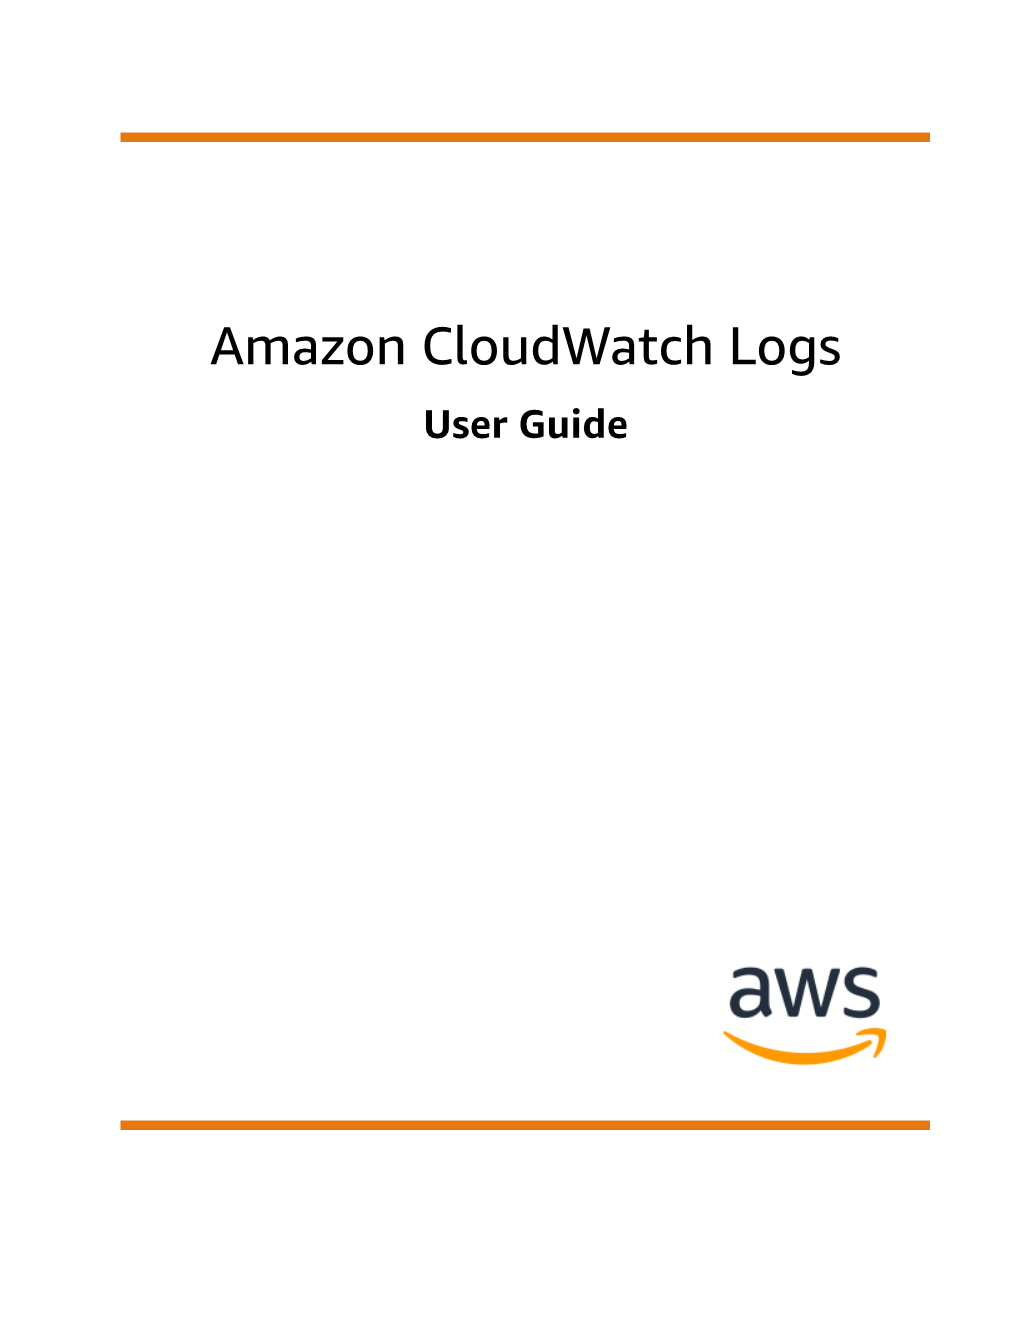 Amazon Cloudwatch Logs User Guide Amazon Cloudwatch Logs User Guide